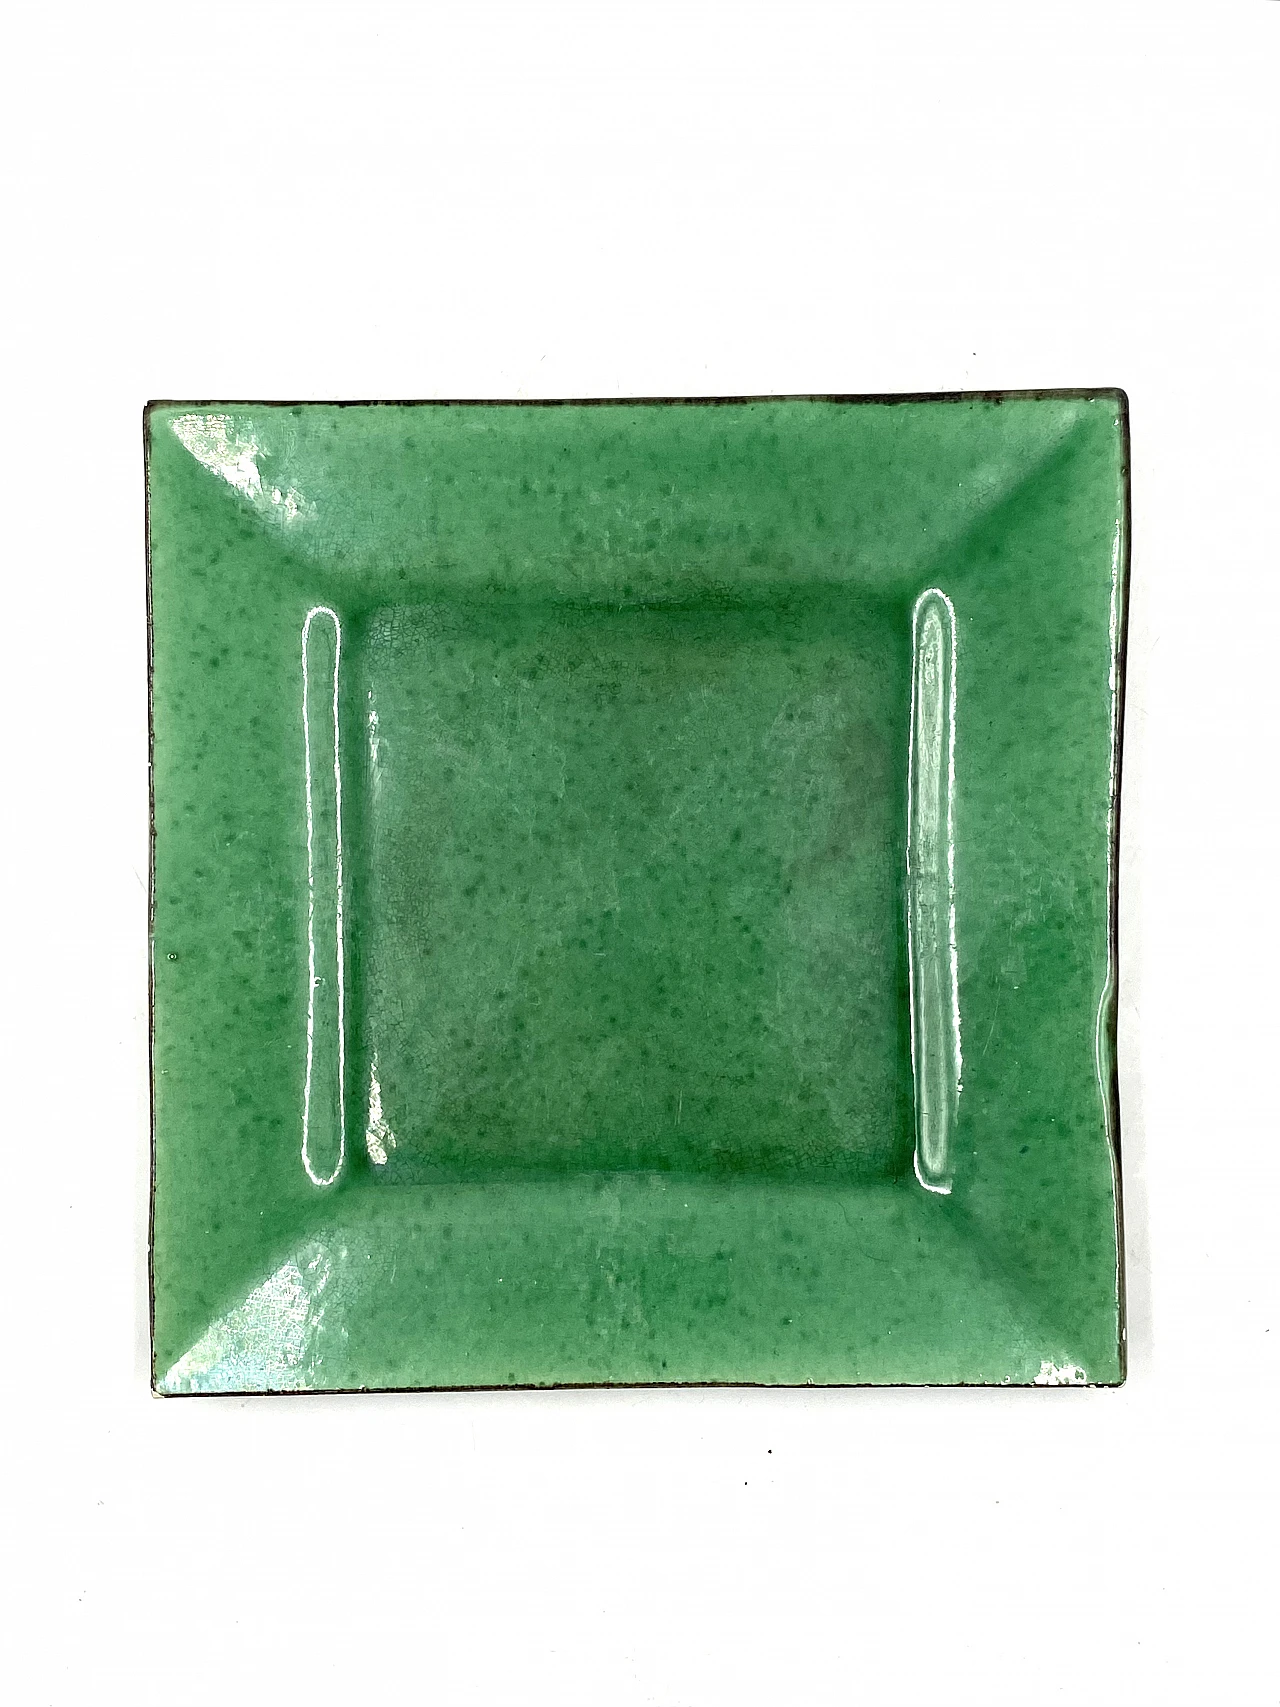 Vide poche in green glazed ceramic, 1960s 12